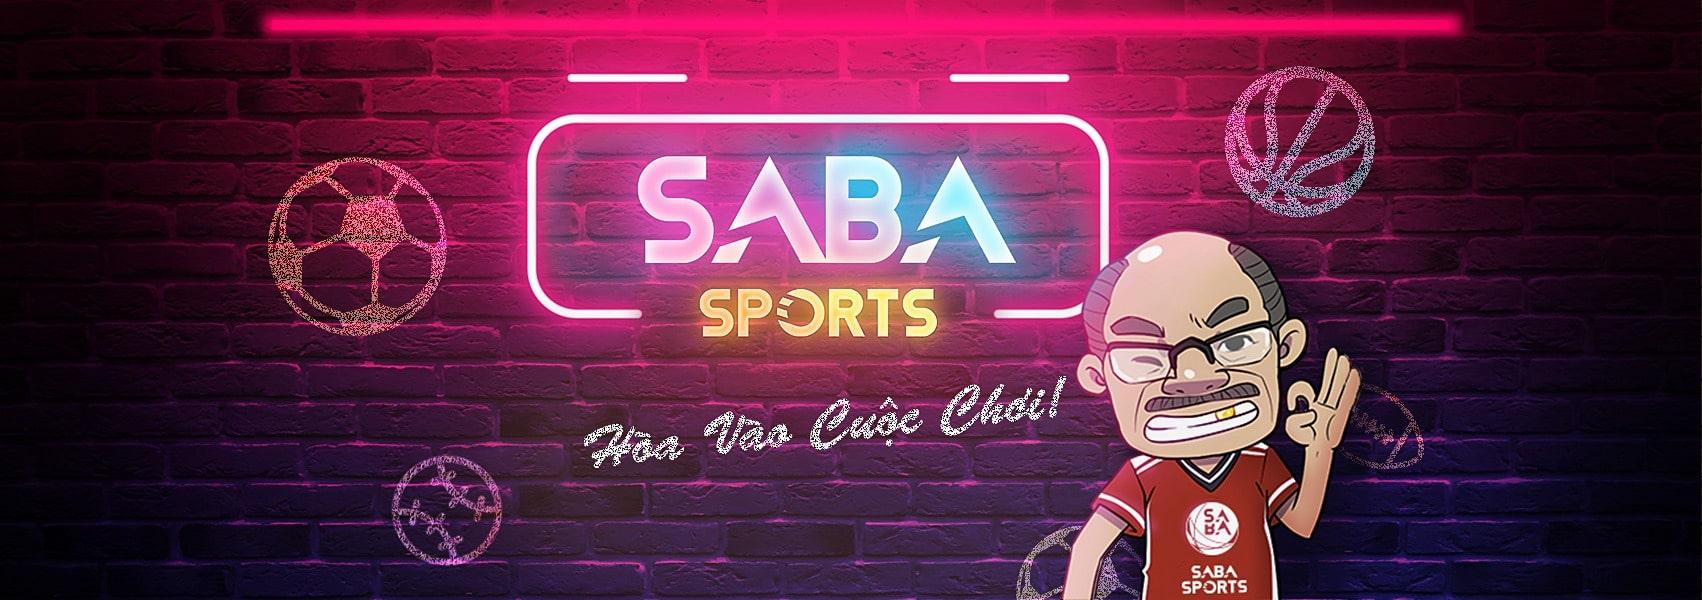 Saba Sports nền tảng cá cược thể thao nổi tiếng và uy tín